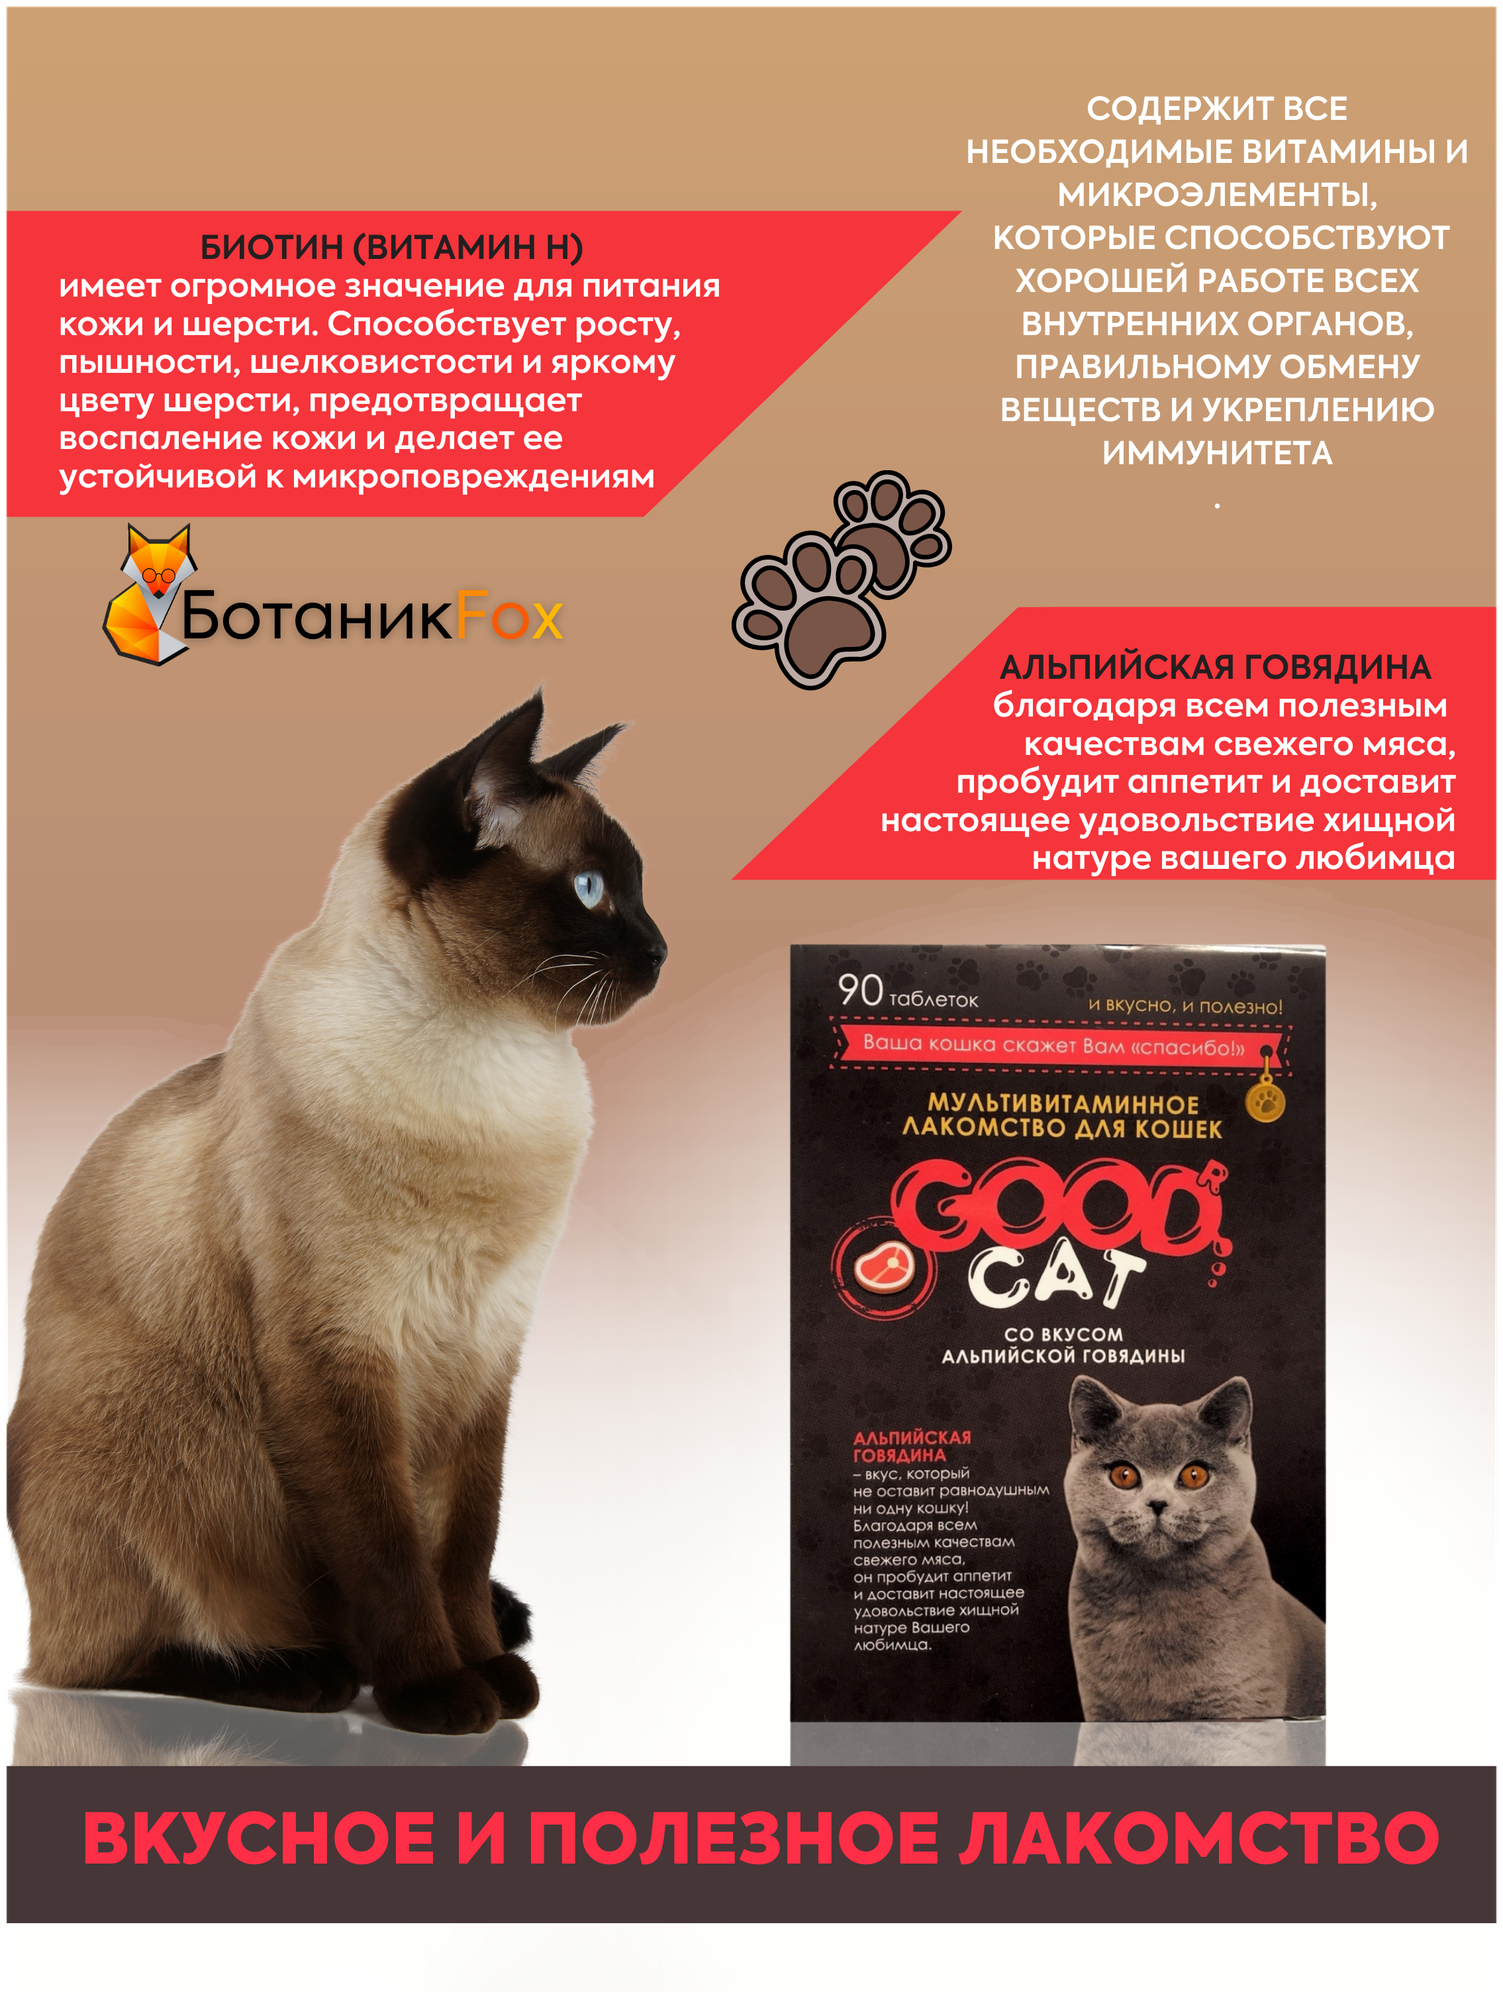 GOOD CAT Мультивитаминное лакомcтво для Кошек со вкусом "альпийской говядины" 90 таб. - фотография № 2